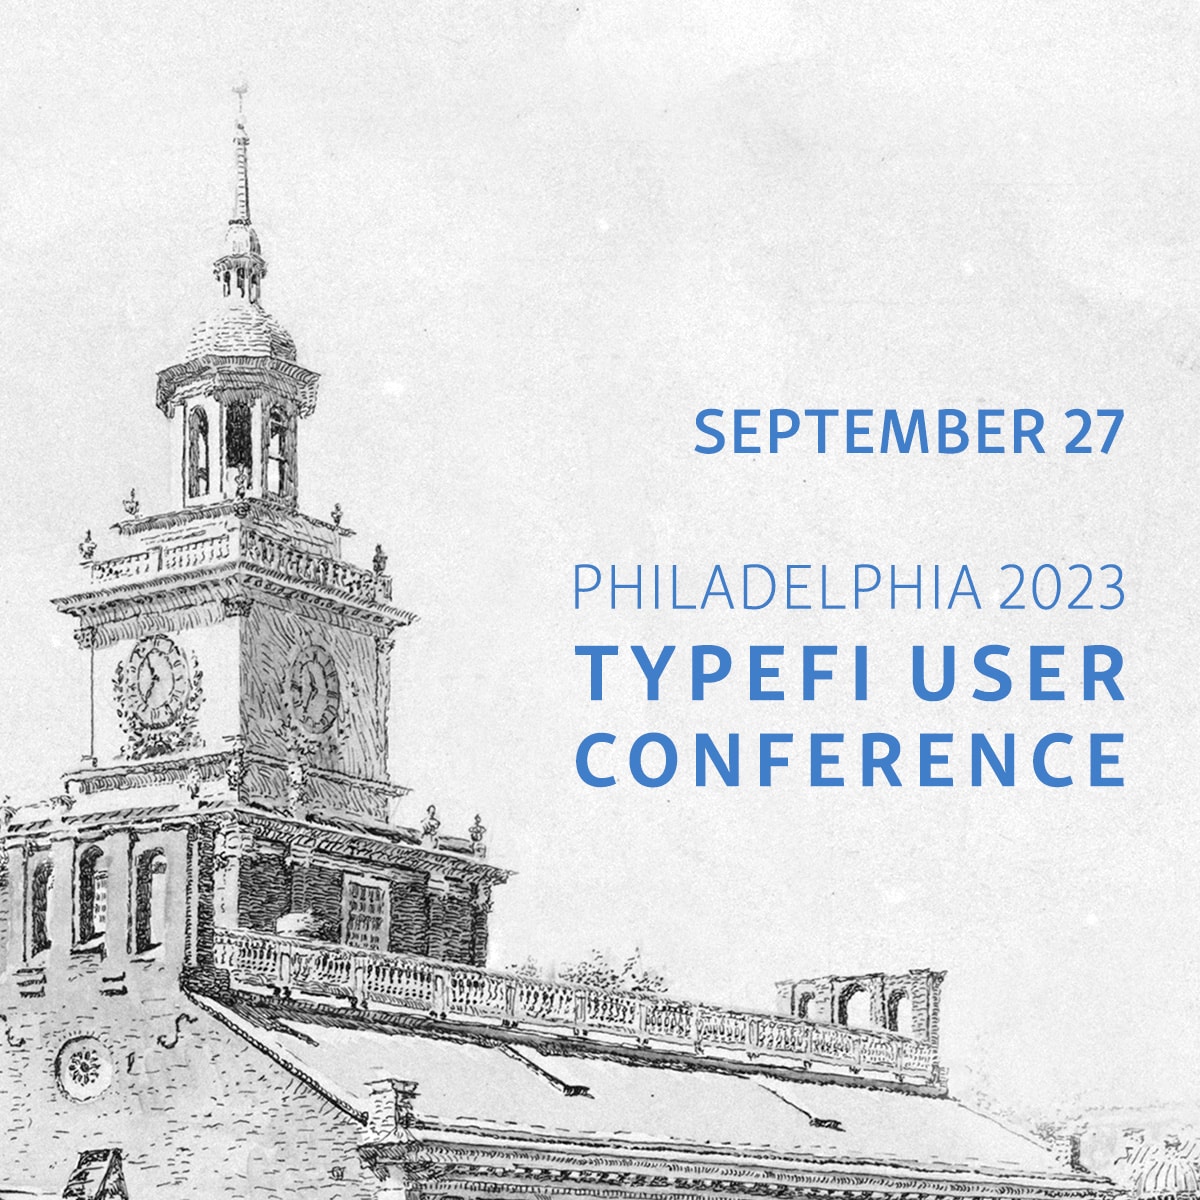 Banner of Typefi User Conference, 27 September 2023